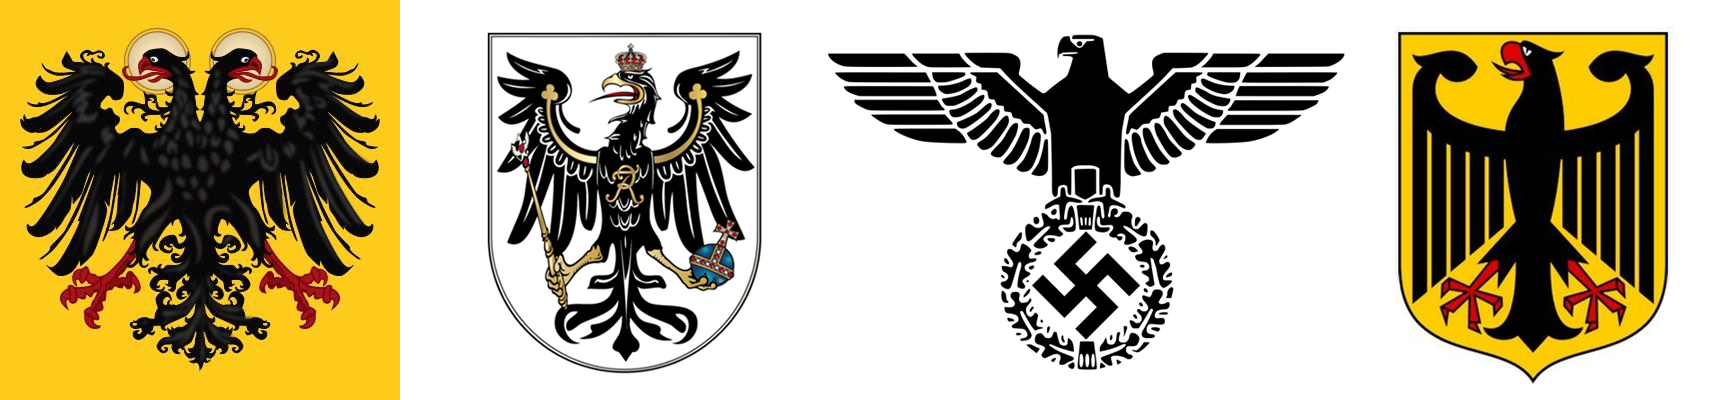 从左到右：神圣罗马帝国、普鲁士王国、第三帝国、现代联邦德国